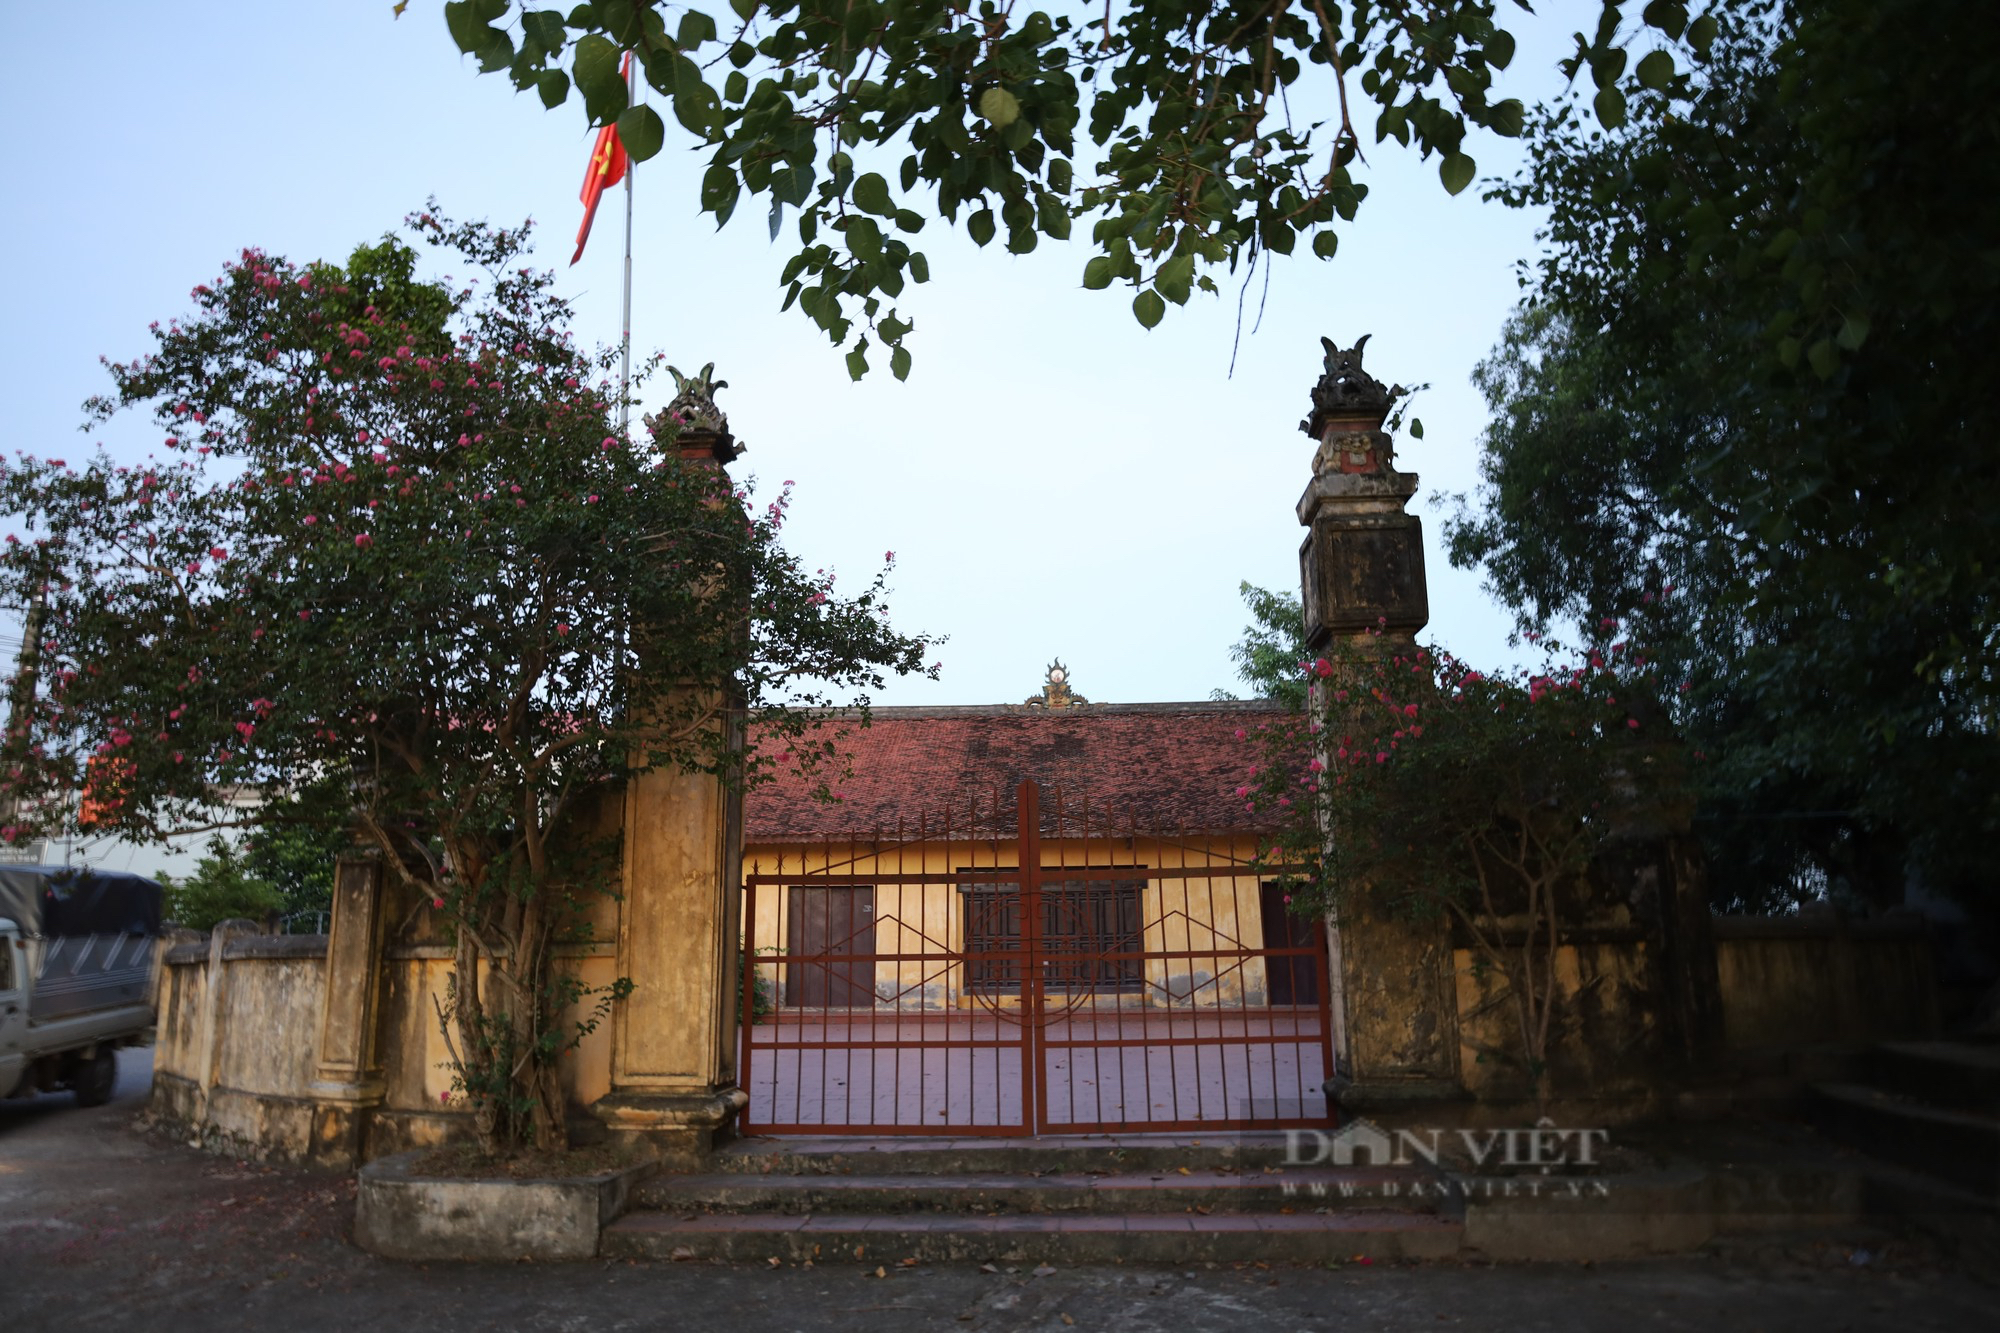 Độc đáo kiến trúc pháp cổ ở ngôi làng Cựu 500 năm tuổi ngoại thành Hà Nội - Ảnh 2.